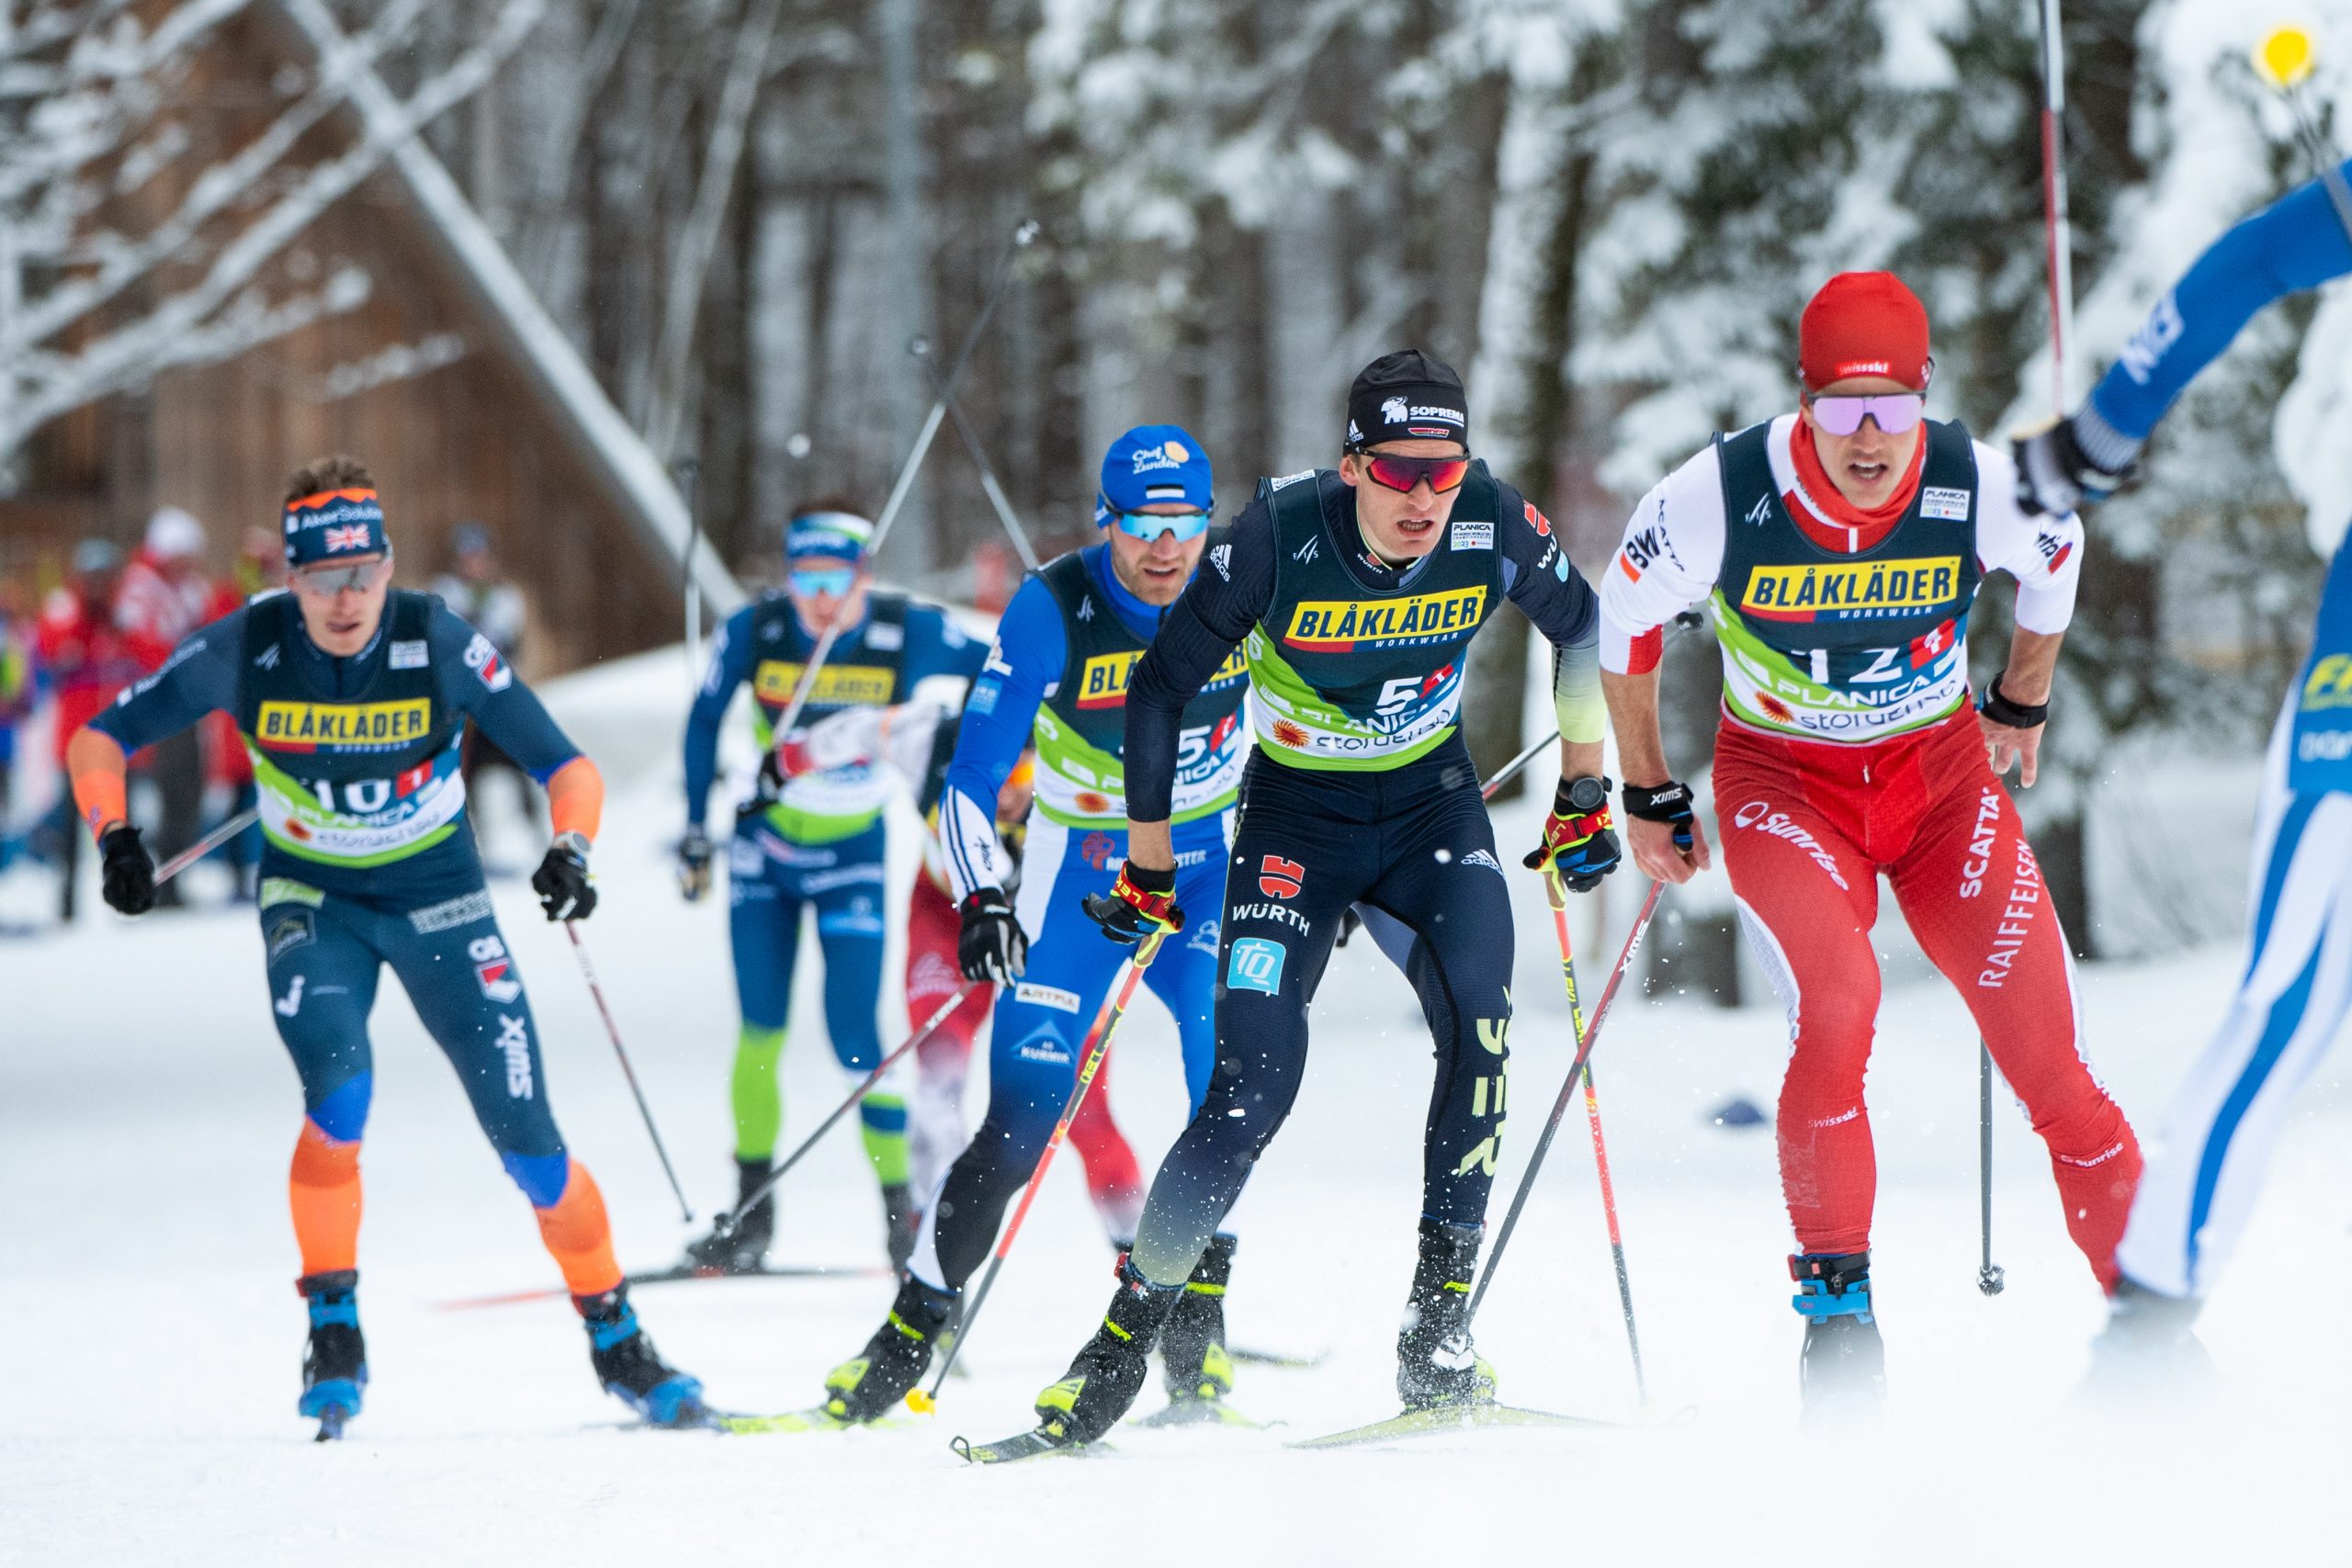 Championnats du monde de ski nordique